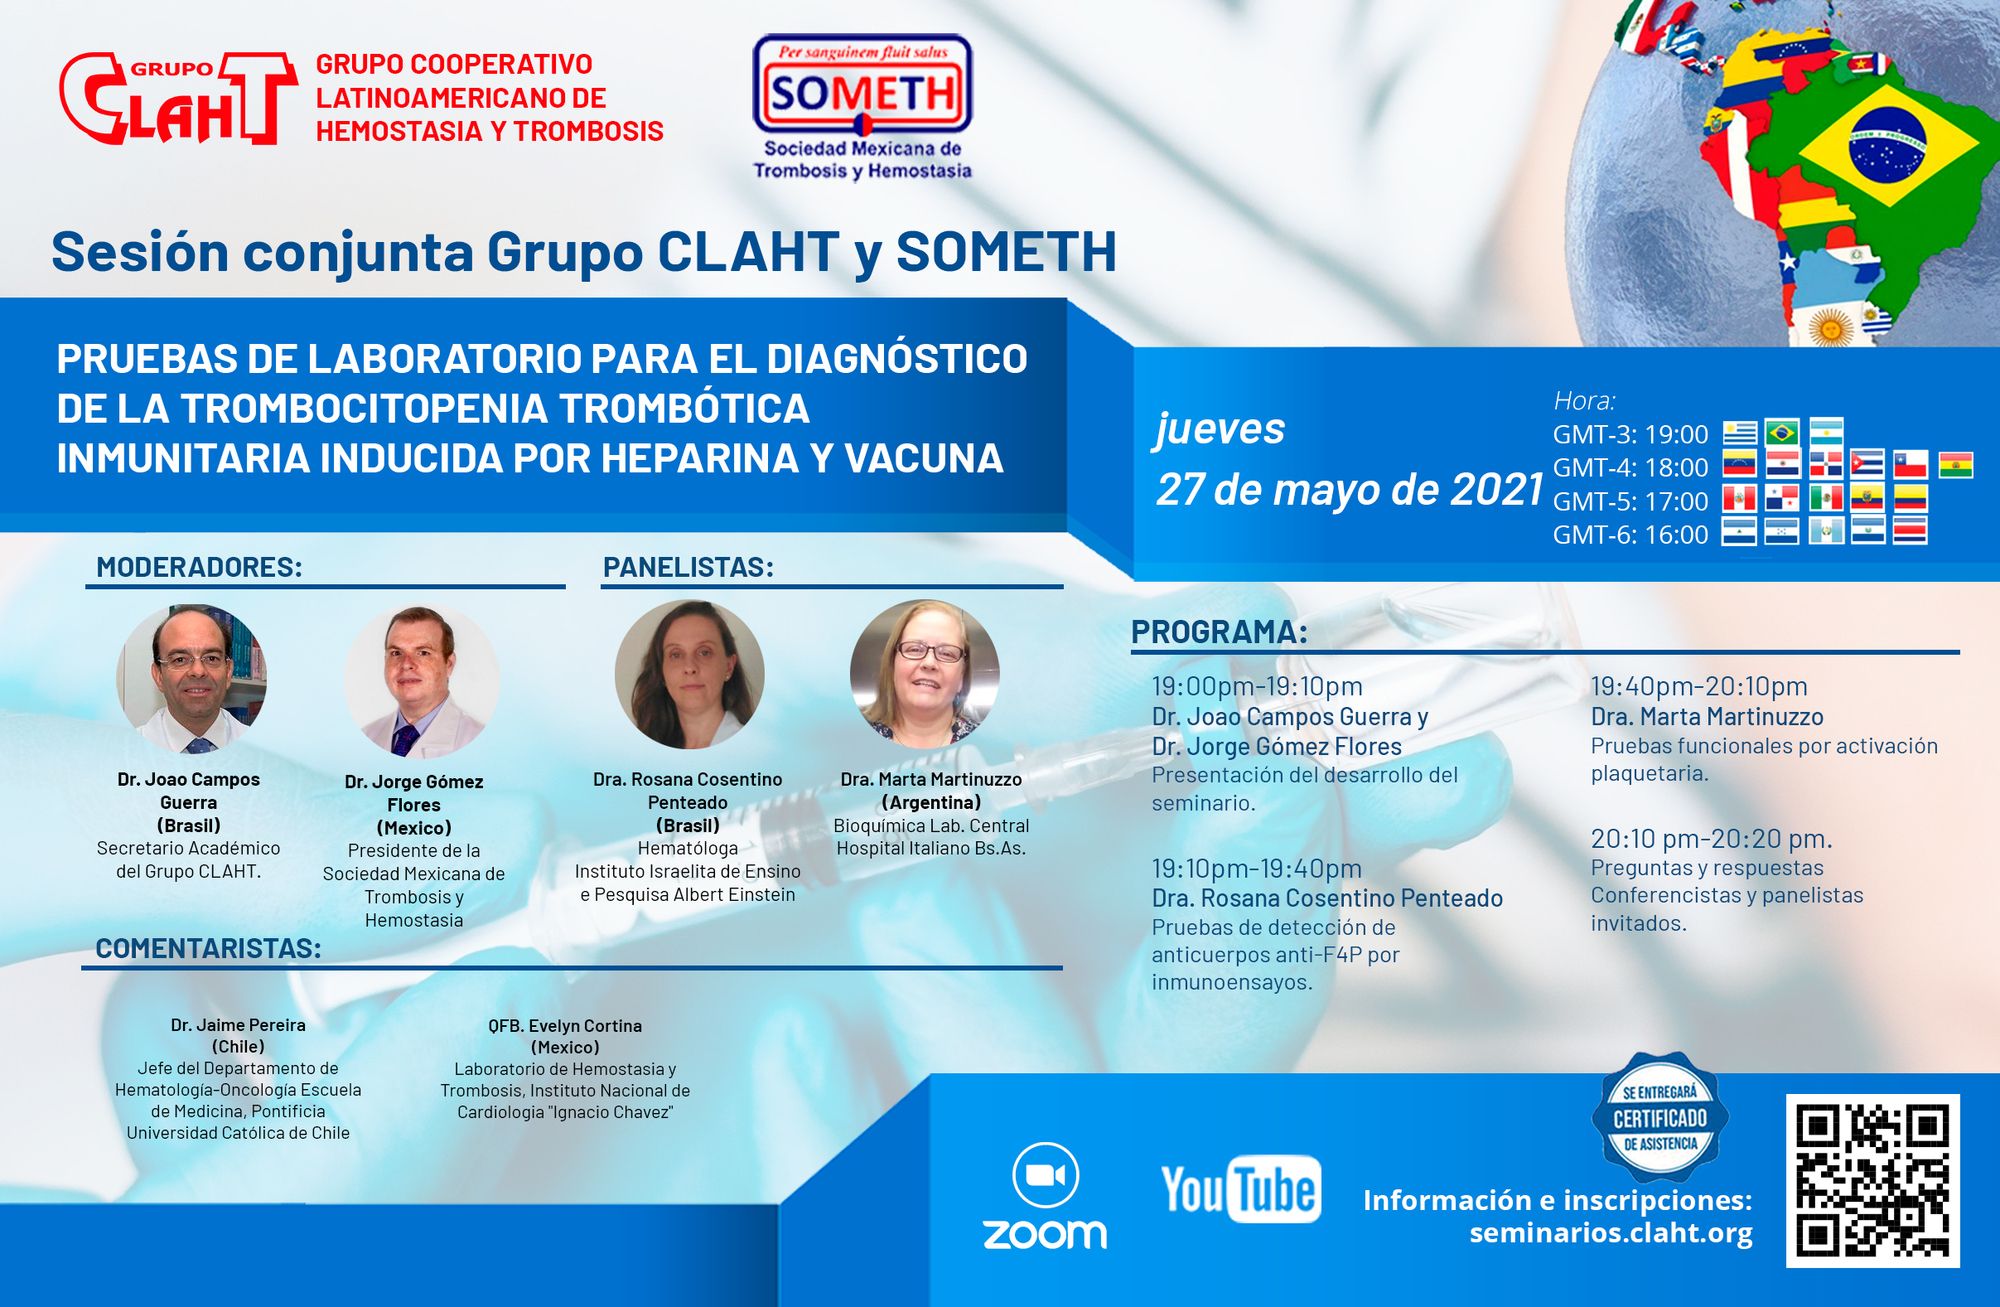 Sesión Conjunta CLAHT y SOMETH: Pruebas de laboratorio para el diagnóstico de la trombocitopenia trombótica inmunitaria inducida por heparina y vacuna.